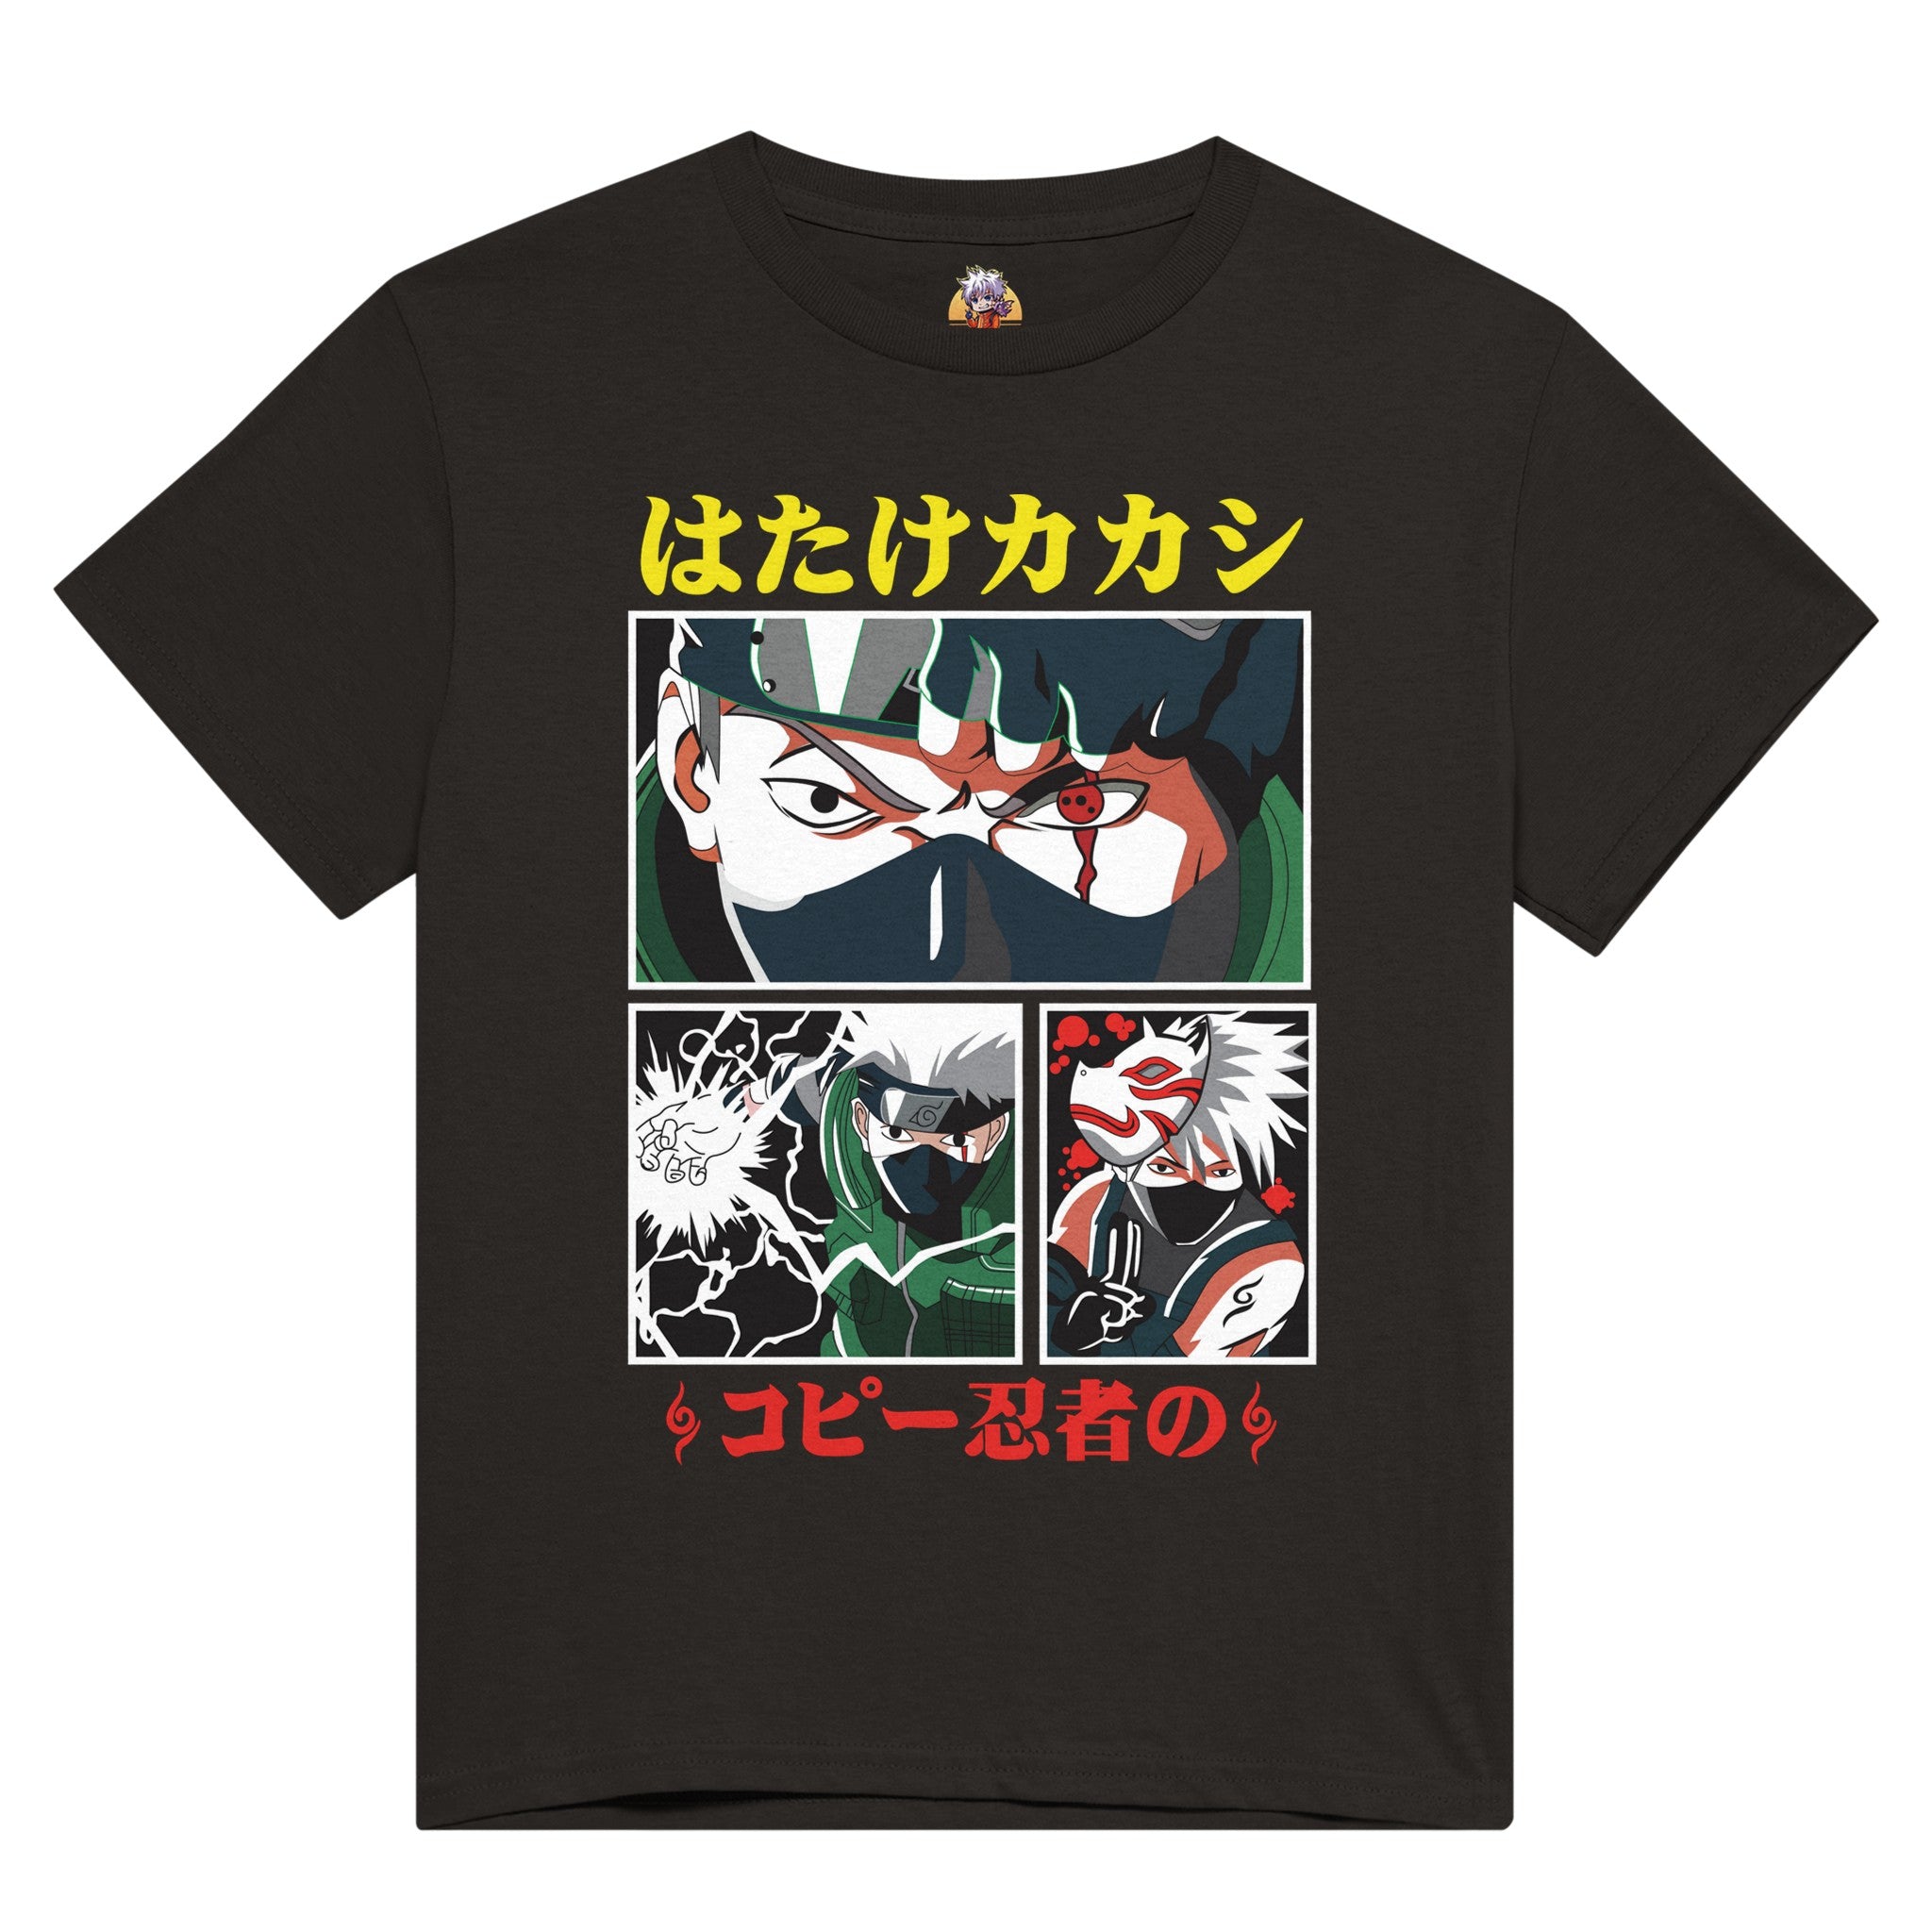 shop and buy kakashi anime clothing t-shirt